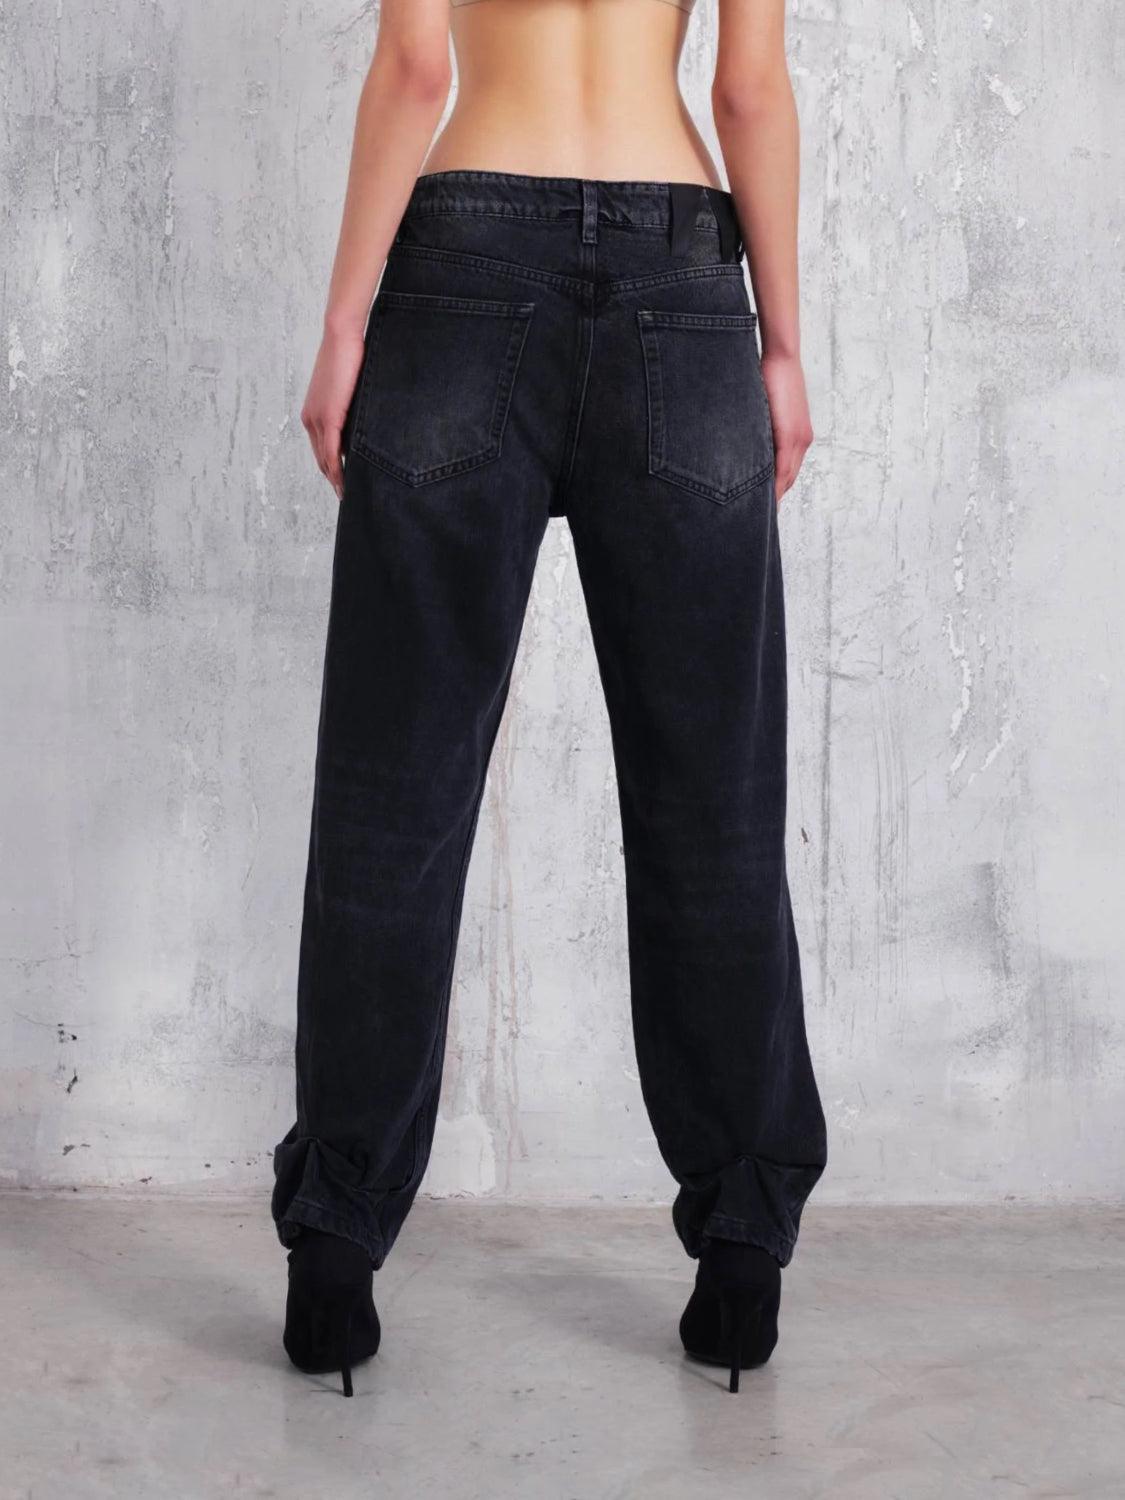 Darkpark Jeans | Jeans Liz used schwarz | WTR21 DBK01 W102 / ADAM/EVE